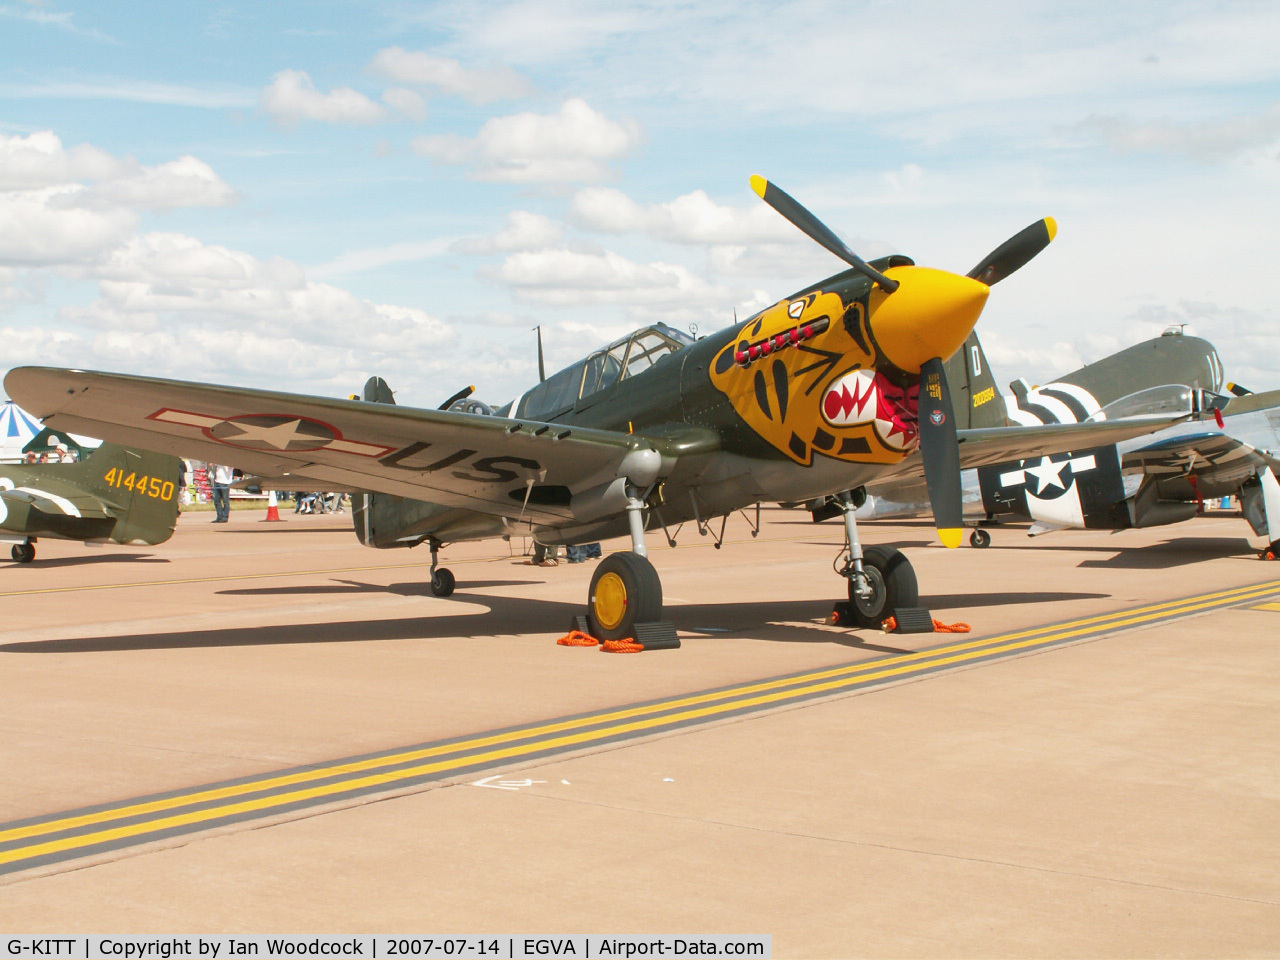 G-KITT, 1943 Curtiss P-40M Warhawk C/N 27490, Curtiss P-40M/Hangar 11 collection/RIAT Fairford